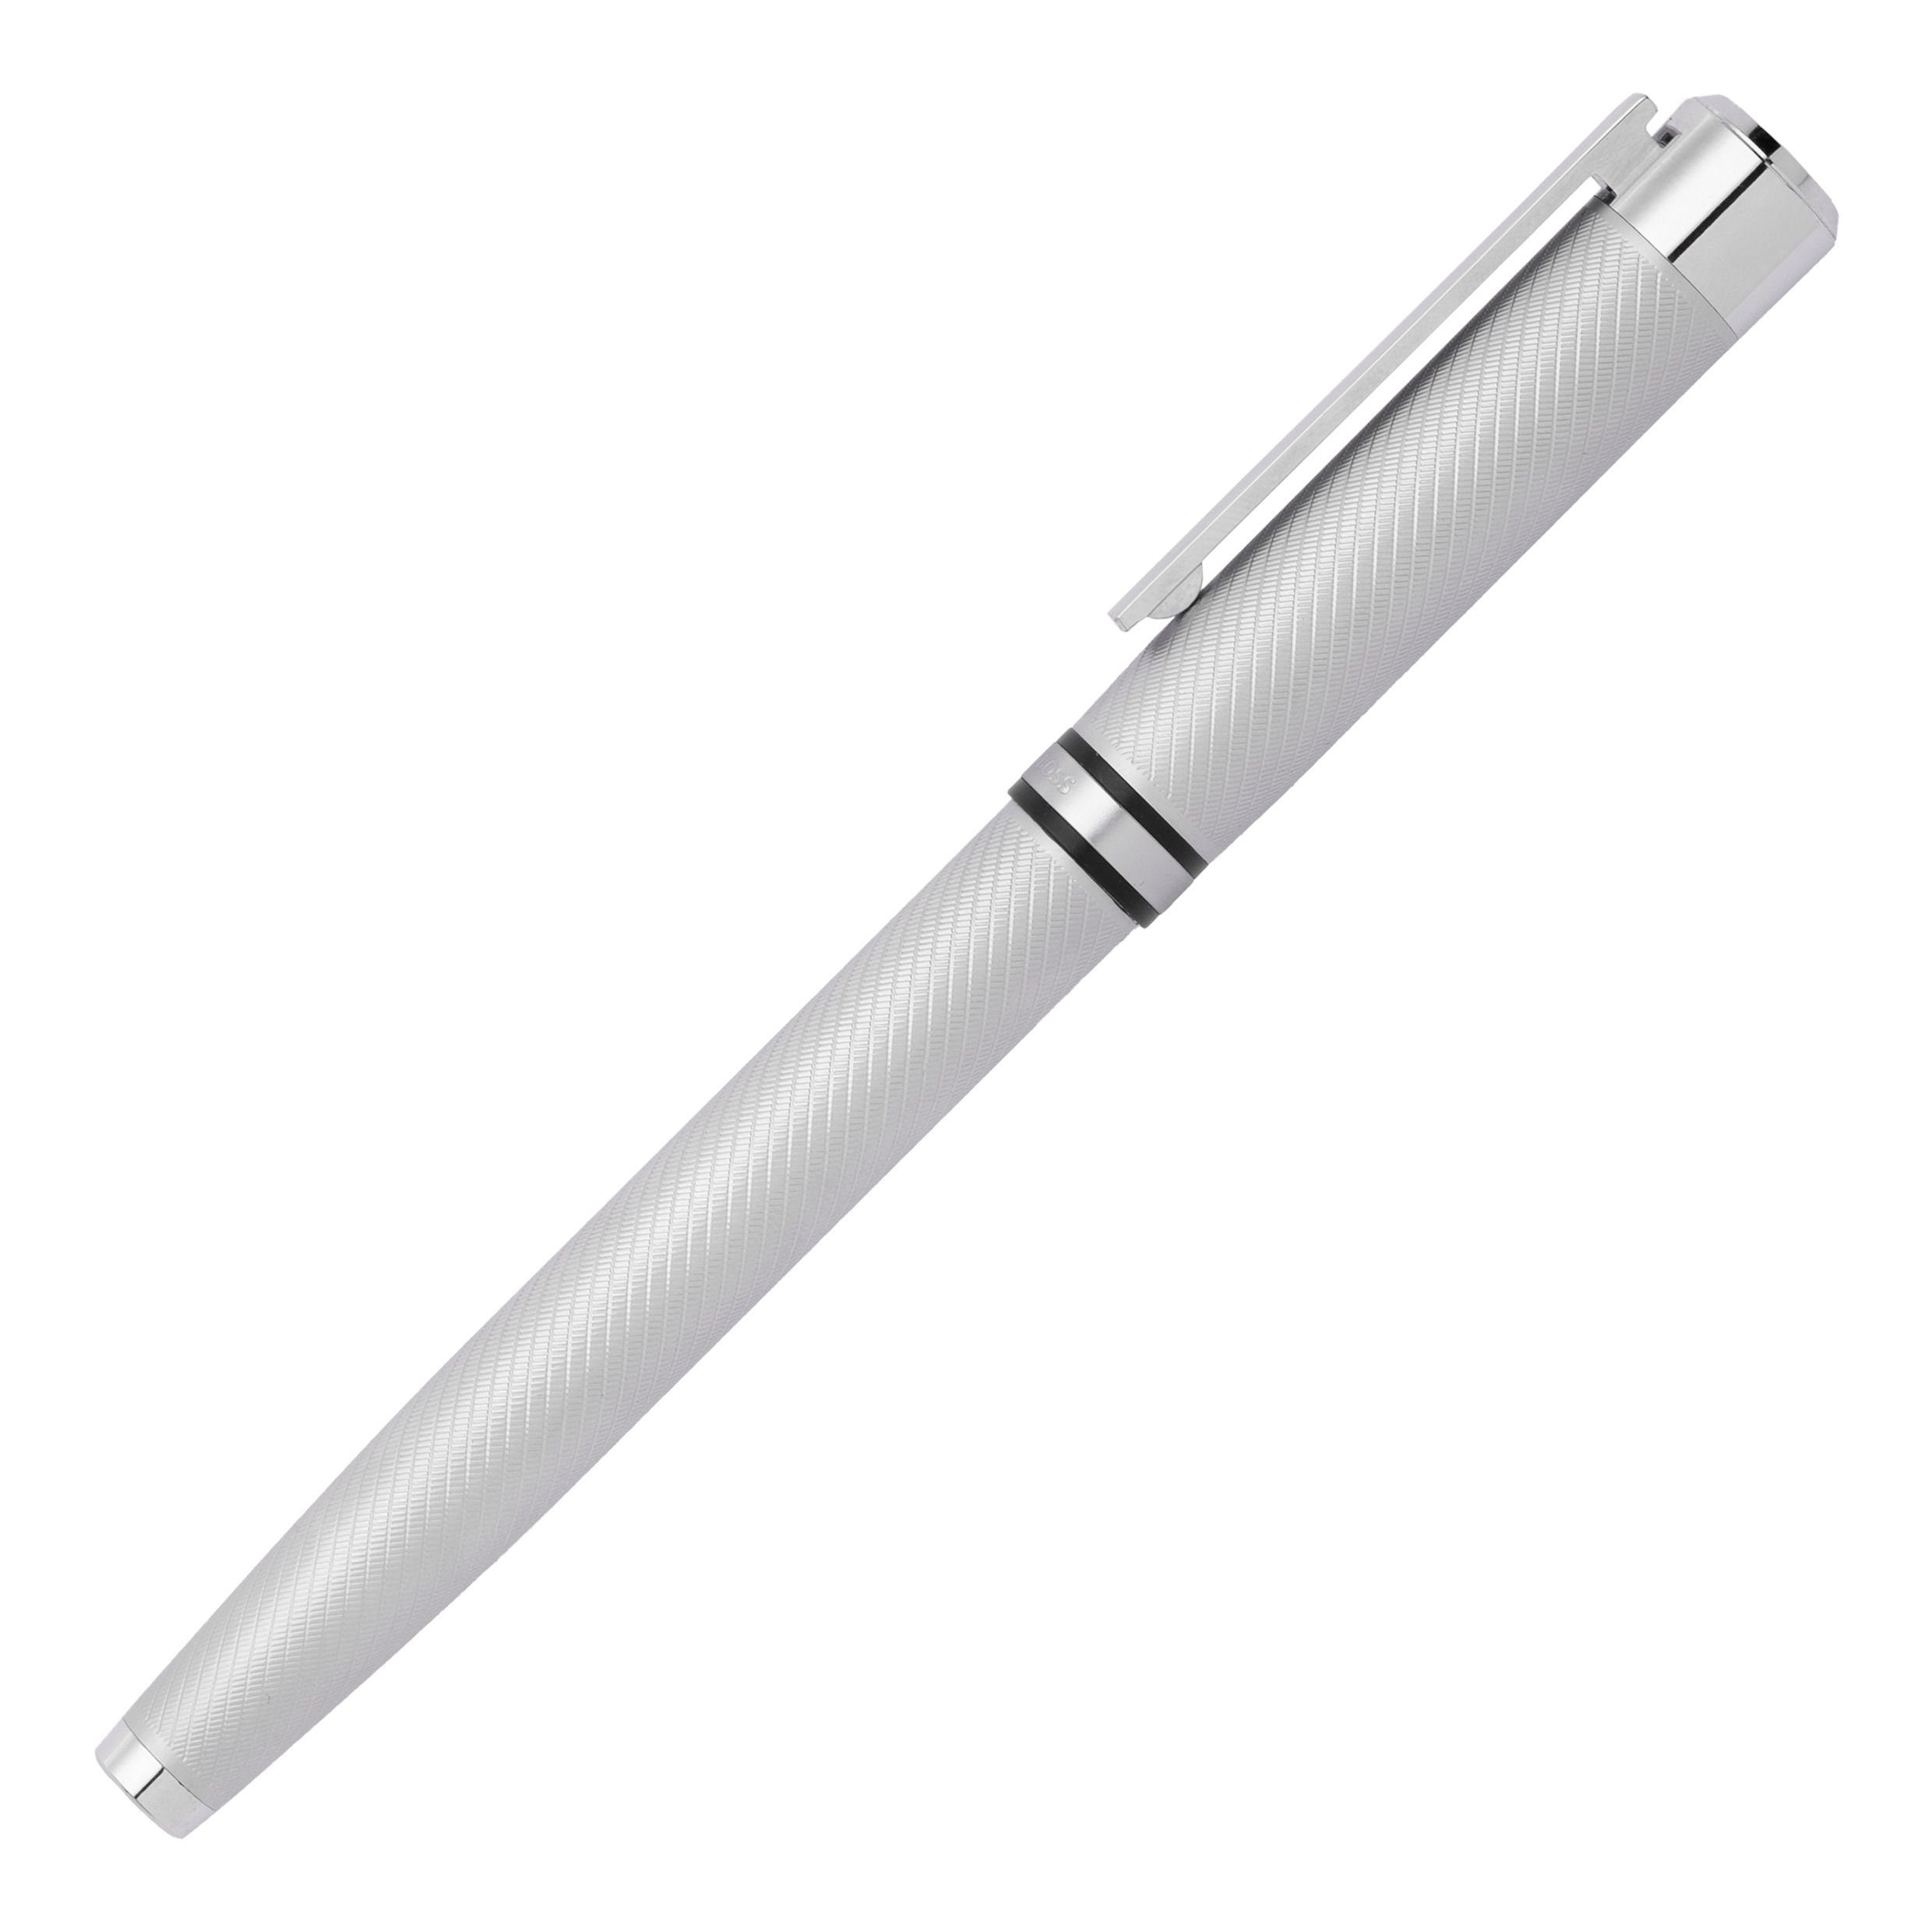 BOSS Füllfederhalter Hugo Boss Set) (kein Metall, Fountain Füllfederhalter Silber Pen Filament Chrome